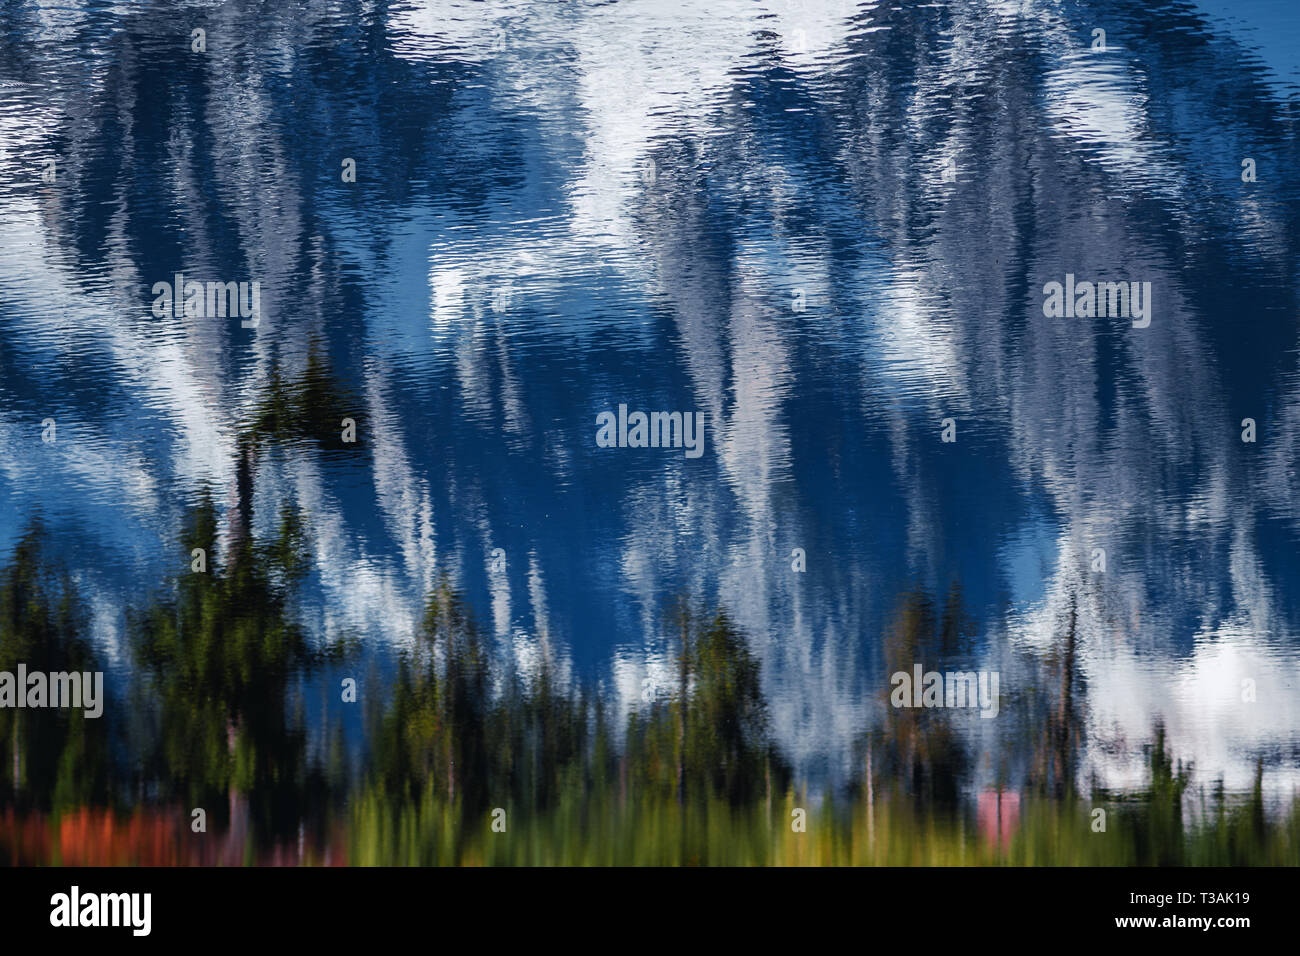 Mount Shuksan riflessa nella foto lago in autunno dal Monte Baker-Snoqualmie National Forest Foto Stock